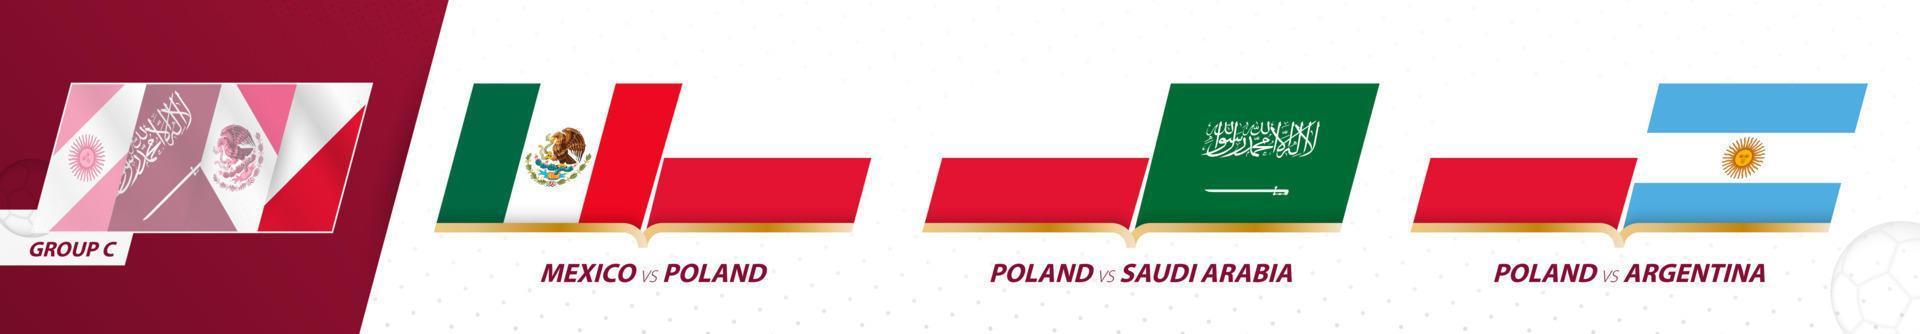 jogos do time de futebol da polônia no grupo c do torneio internacional de futebol 2022. vetor